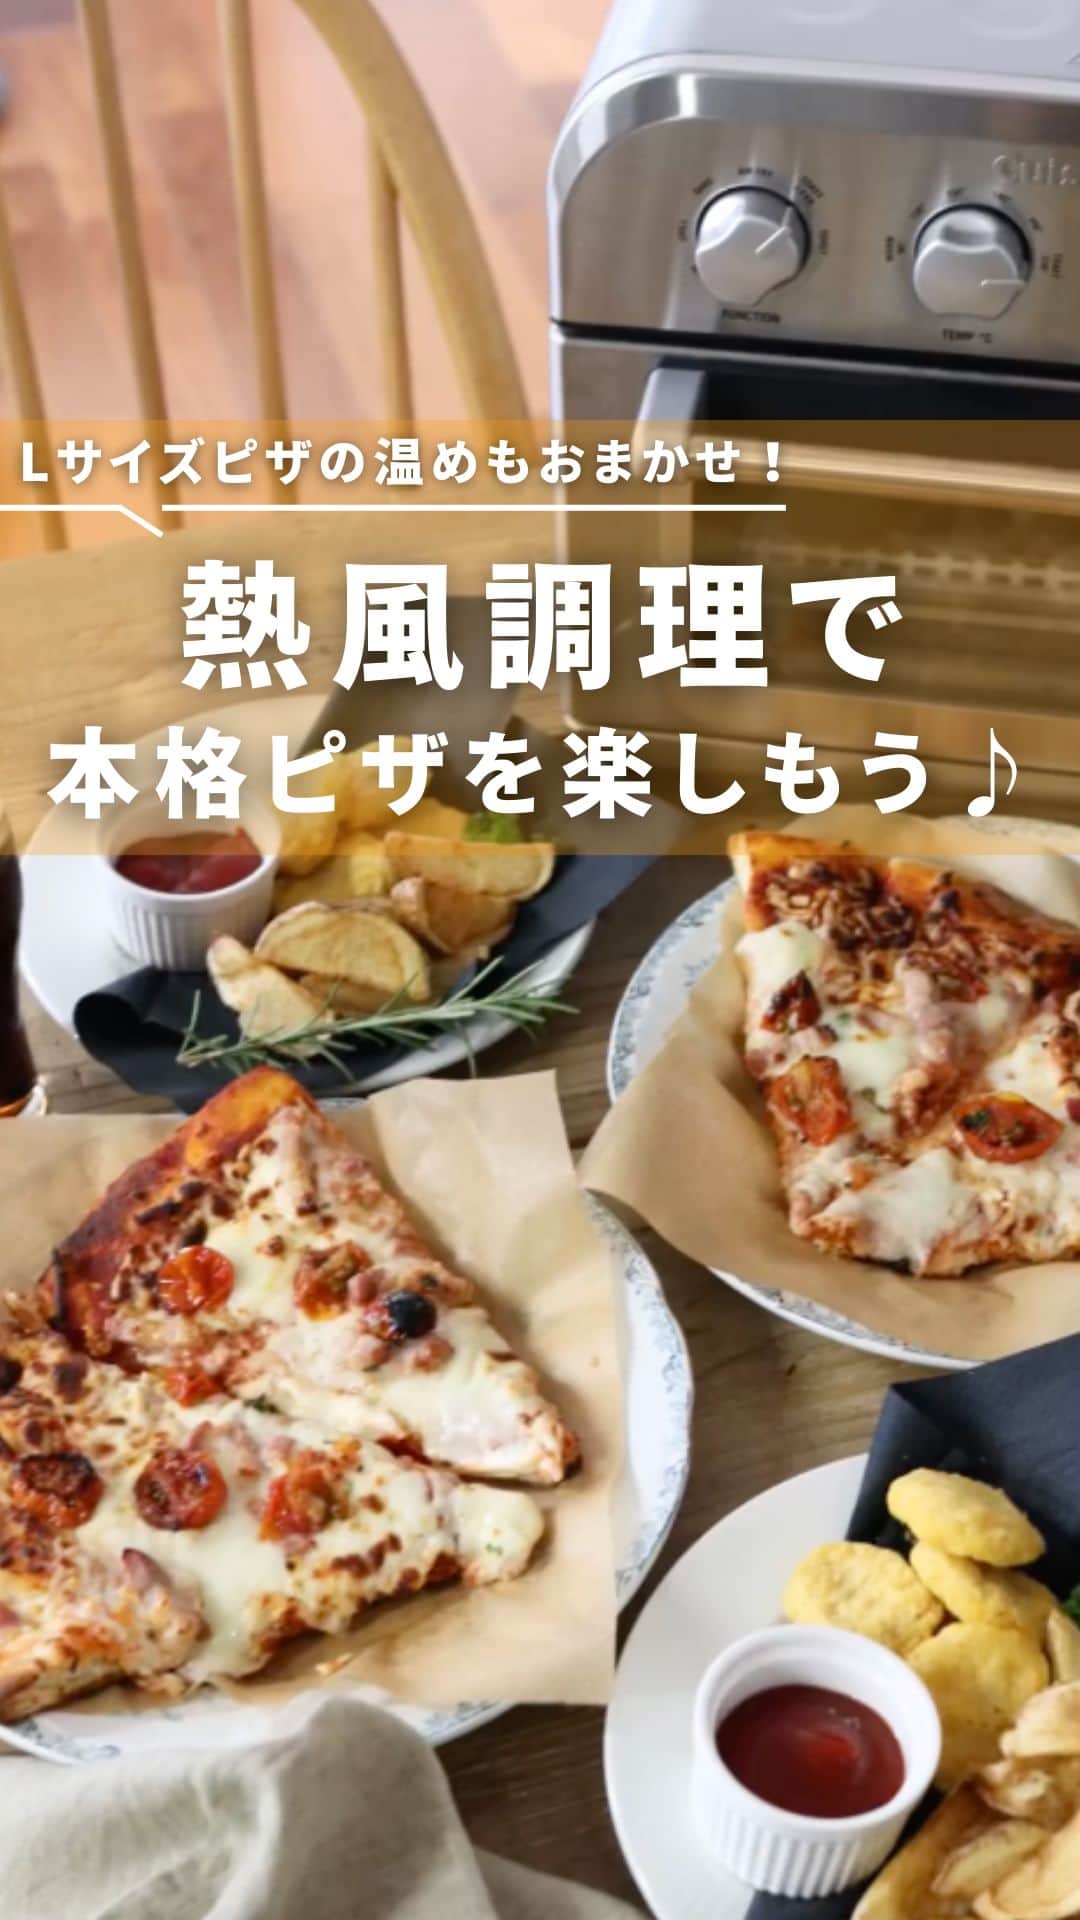 Cuisinart(クイジナート)ジャパン公式アカウントのインスタグラム：「🍕広々庫内で大きいサイズのピザもラクラク焼ける✨  人が集まるホリデーシーズンに食べたい 大きな大きなLサイズピザ🤍  クイジナートの「エアフライ オーブントースター」なら 直径40cmの大きなピザも 1/4カットが一度に焼けちゃいます♪  天面から送り出される強力熱風で食材を包み込み、 大きな冷凍ピザもチルドピザでも美味しく焼けるので、 カリッとモチッと食感の 本格的なピザがおうちでも楽しめますよ😊🍕  ・。・。・。・。・。・⁣  ◽️Item：エアフライ オーブントースター  🔍TOA38SJ(シルバー） TOA-38WJ（ホワイト）⁣ ・。・。・。・。・。・⁣  ーーーーー クイジナート公式HPでは、毎日の料理が楽しくなる様々な製品情報やレシピを公開中♪ 詳しくはプロフィールのリンクから！ ▶️ @cuisine_art ーーーーー  #Cuisinart #クイジナート #クイジナートのある生活 #クイジナートLOVE #時短調理 #時短家電 #キッチン家電 #おうちごはん #おうち時間を楽しむ #丁寧な暮らし #豊かな食卓 #美味しい時間 #料理好きな人と繋がりたい #クイジナートエアフライオーブントースター #クイジナートノンフライオーブントースター #オーブントースター #トースターレシピ #ピザ #コストコ #焼き立てピザ #手作りピザ #本格ピザ #ピザ作り #クリスマスメニュー #コストコピザ #ピザパーティー🍕 #ピザパーティー #パーティメニュー #クリスマスパーティー料理 #クリスマス料理」